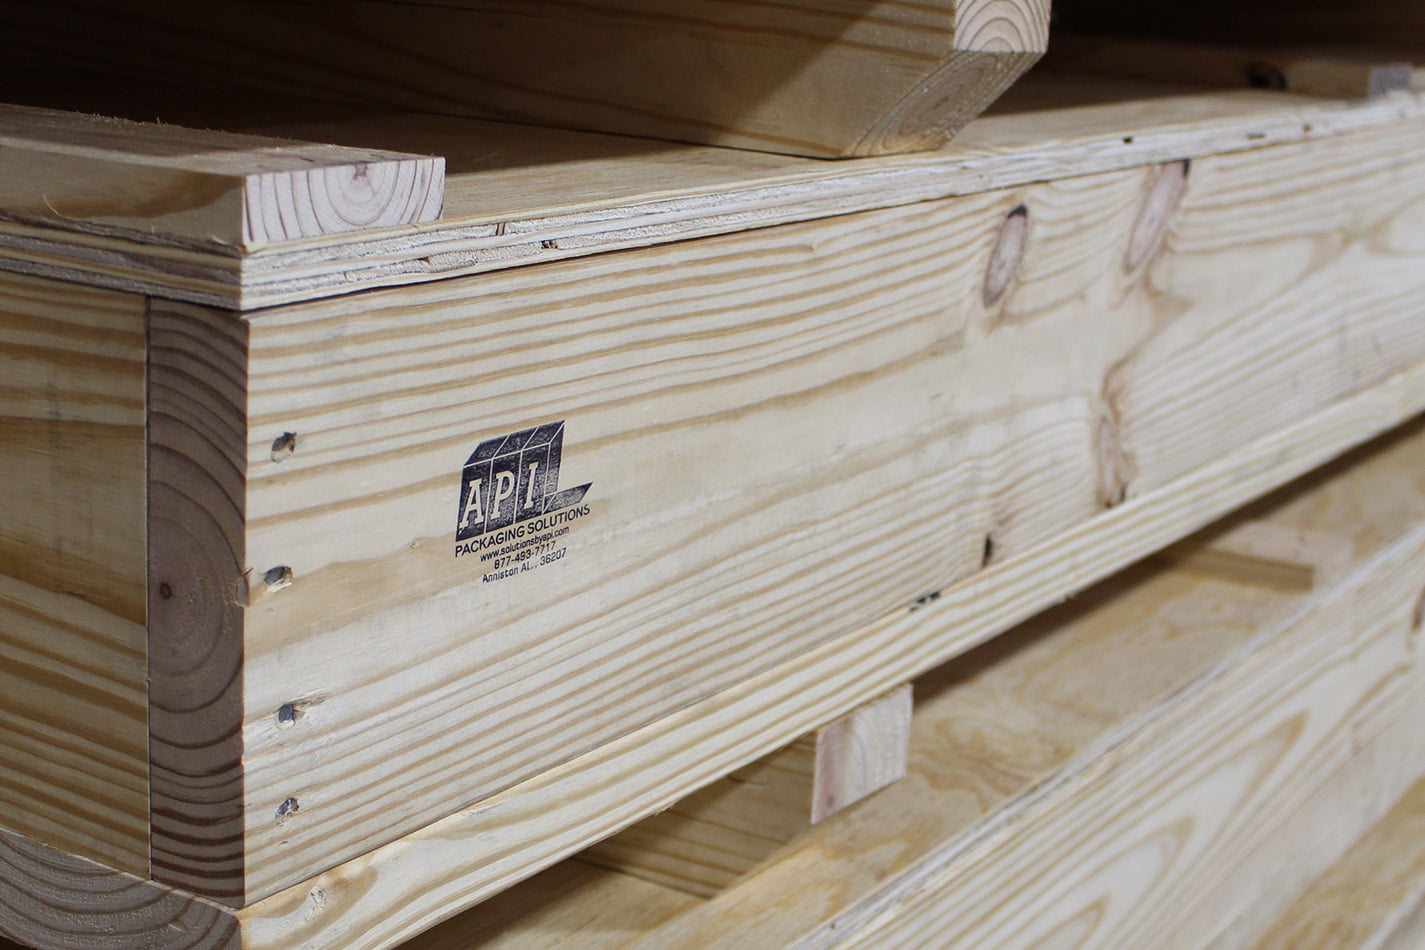 Heavy-duty wood crates